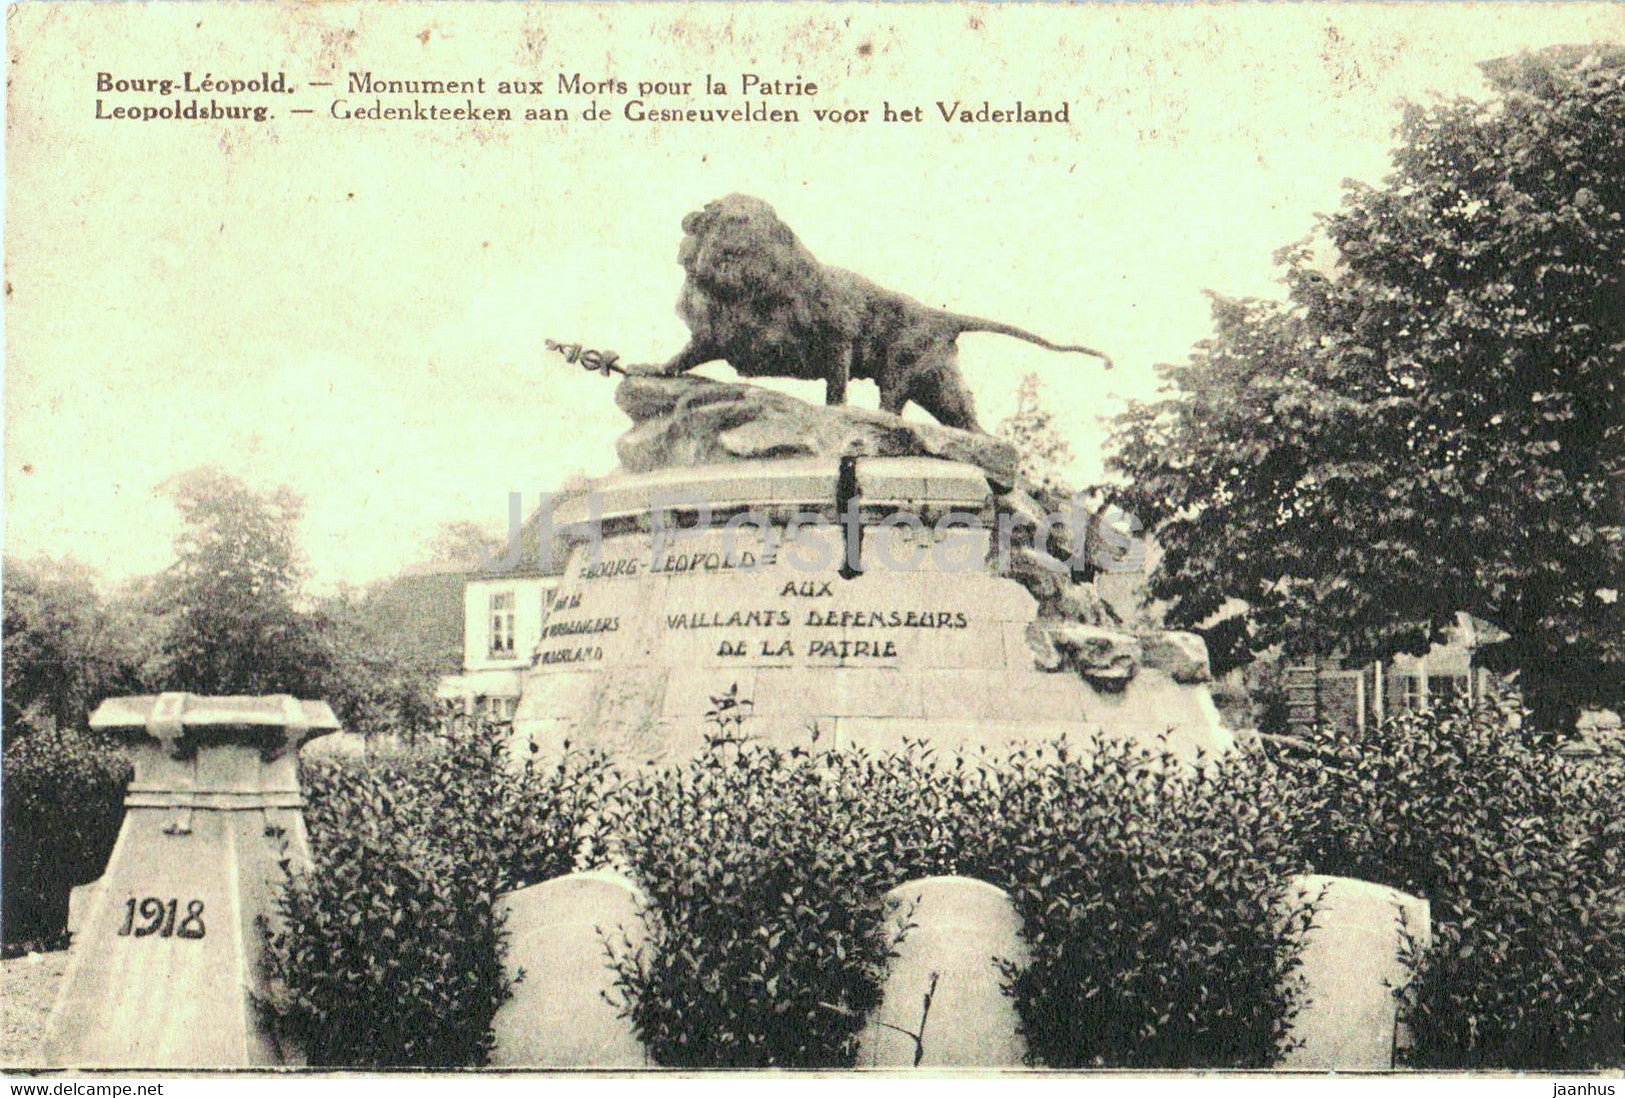 Bourg Leopold - Leopoldsburg - Monument aux Morts pour la Patrie - old postcard - Belgium - unused - JH Postcards